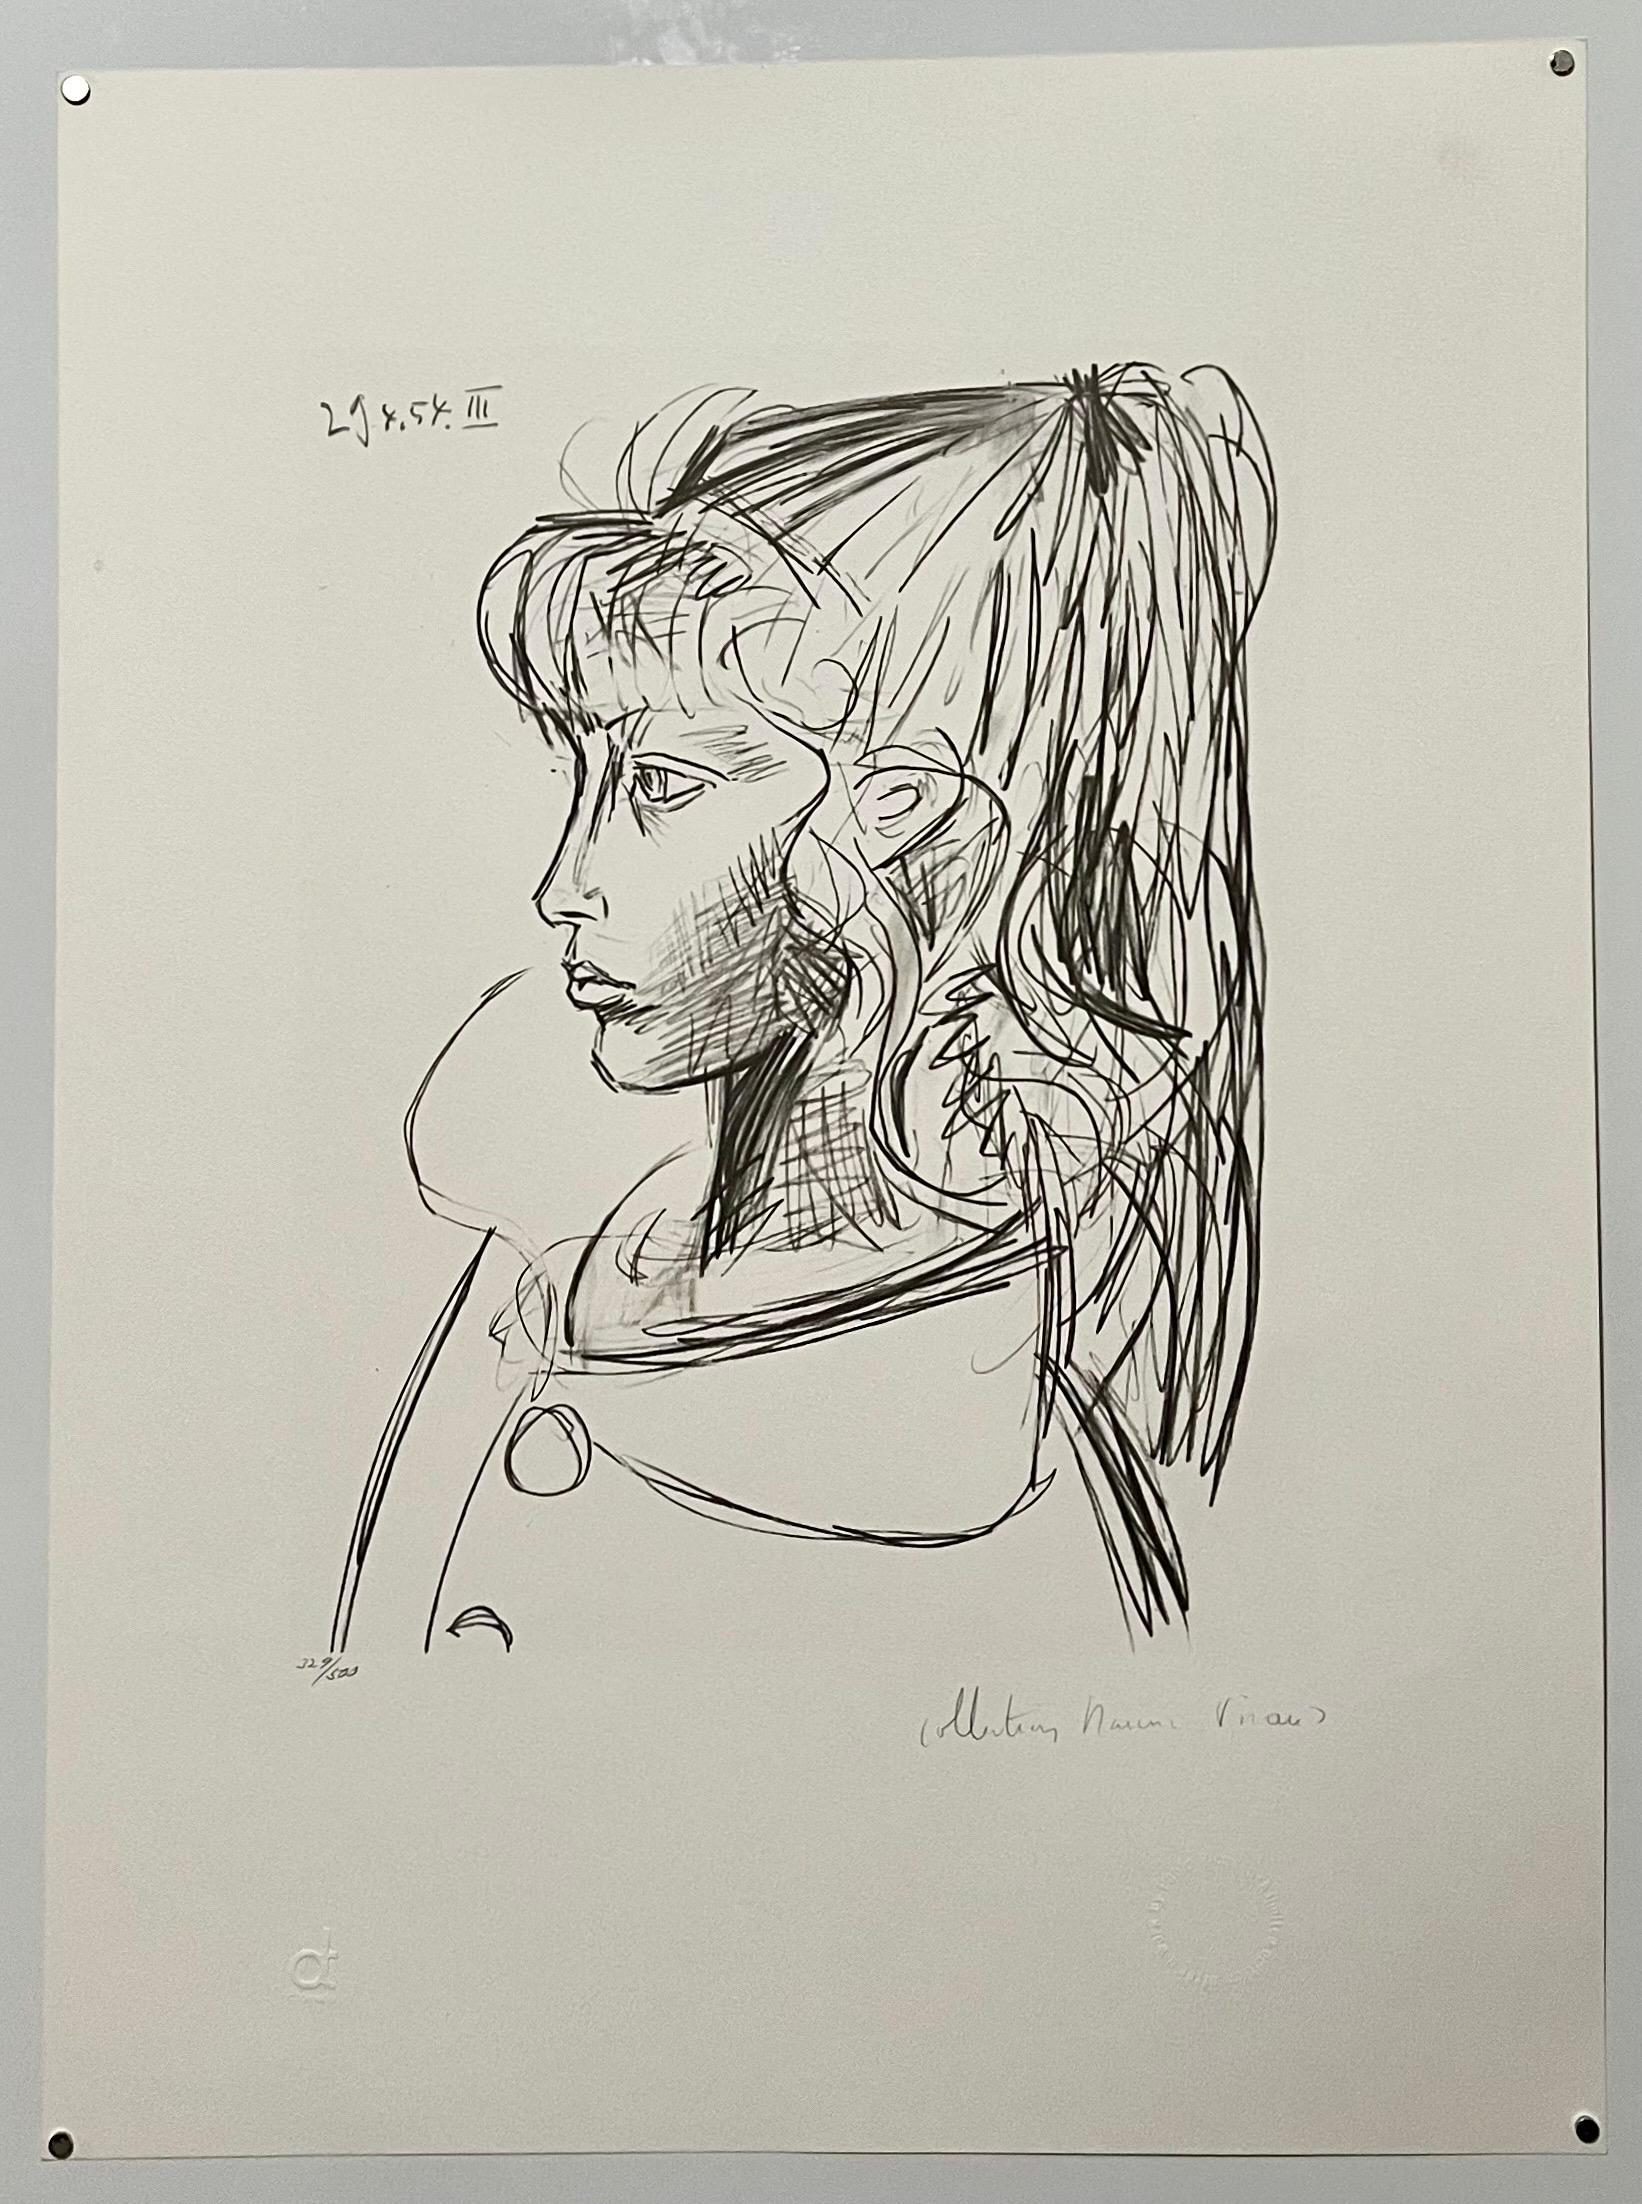 Portrait de jeune femme, lithographie cubiste signée à la main, propriété de Pablo Picasso - Print de (after) Pablo Picasso